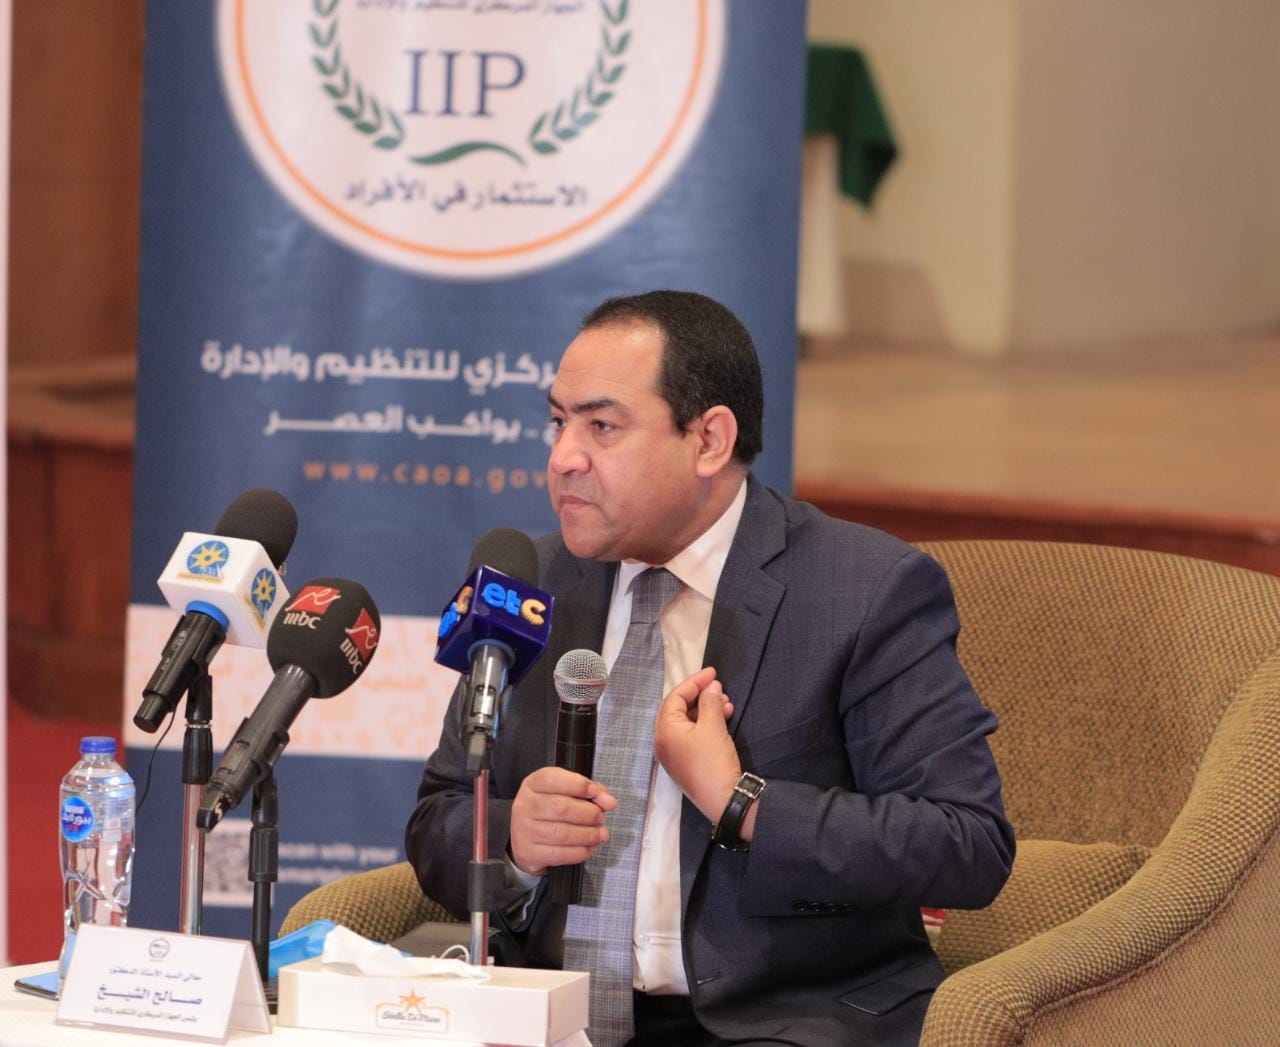 صالح الشيخ، رئيس الجهاز المركزي للتنظيم والإدارة